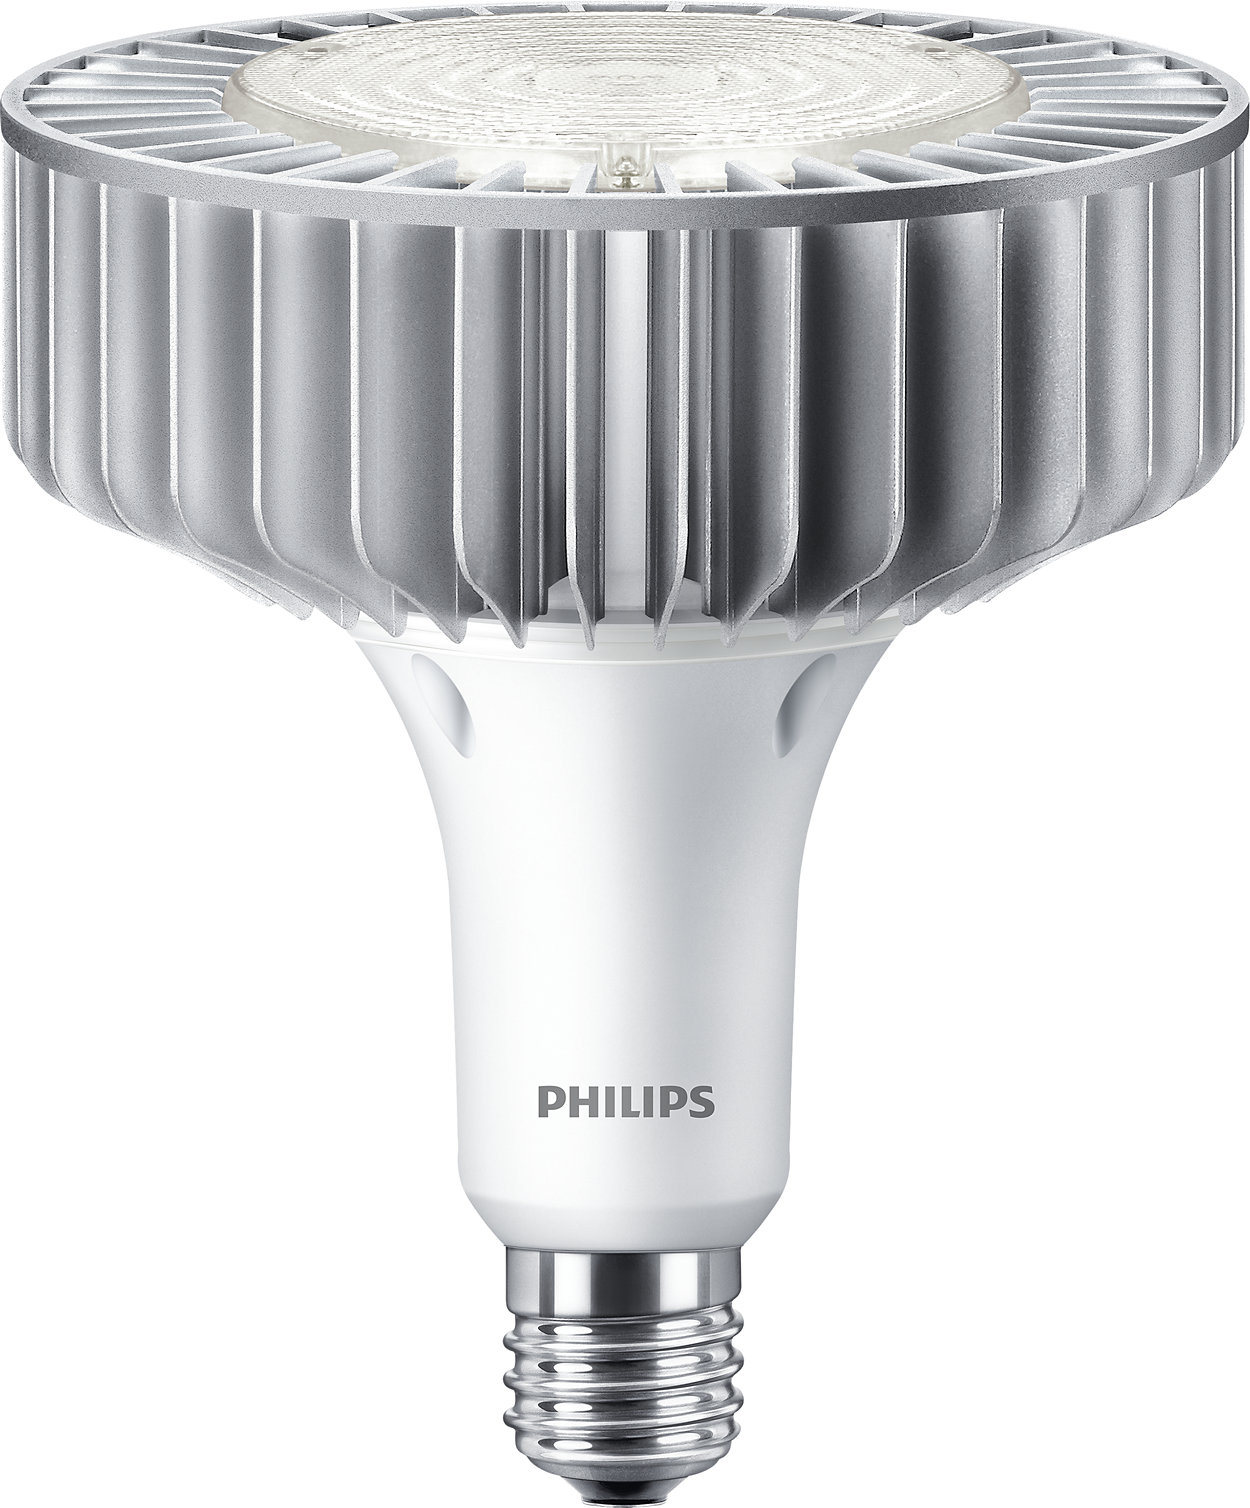 Una solución LED simple para el reemplazo directo de lámparas HID con ahorros instantáneos y un bajo costo inicial